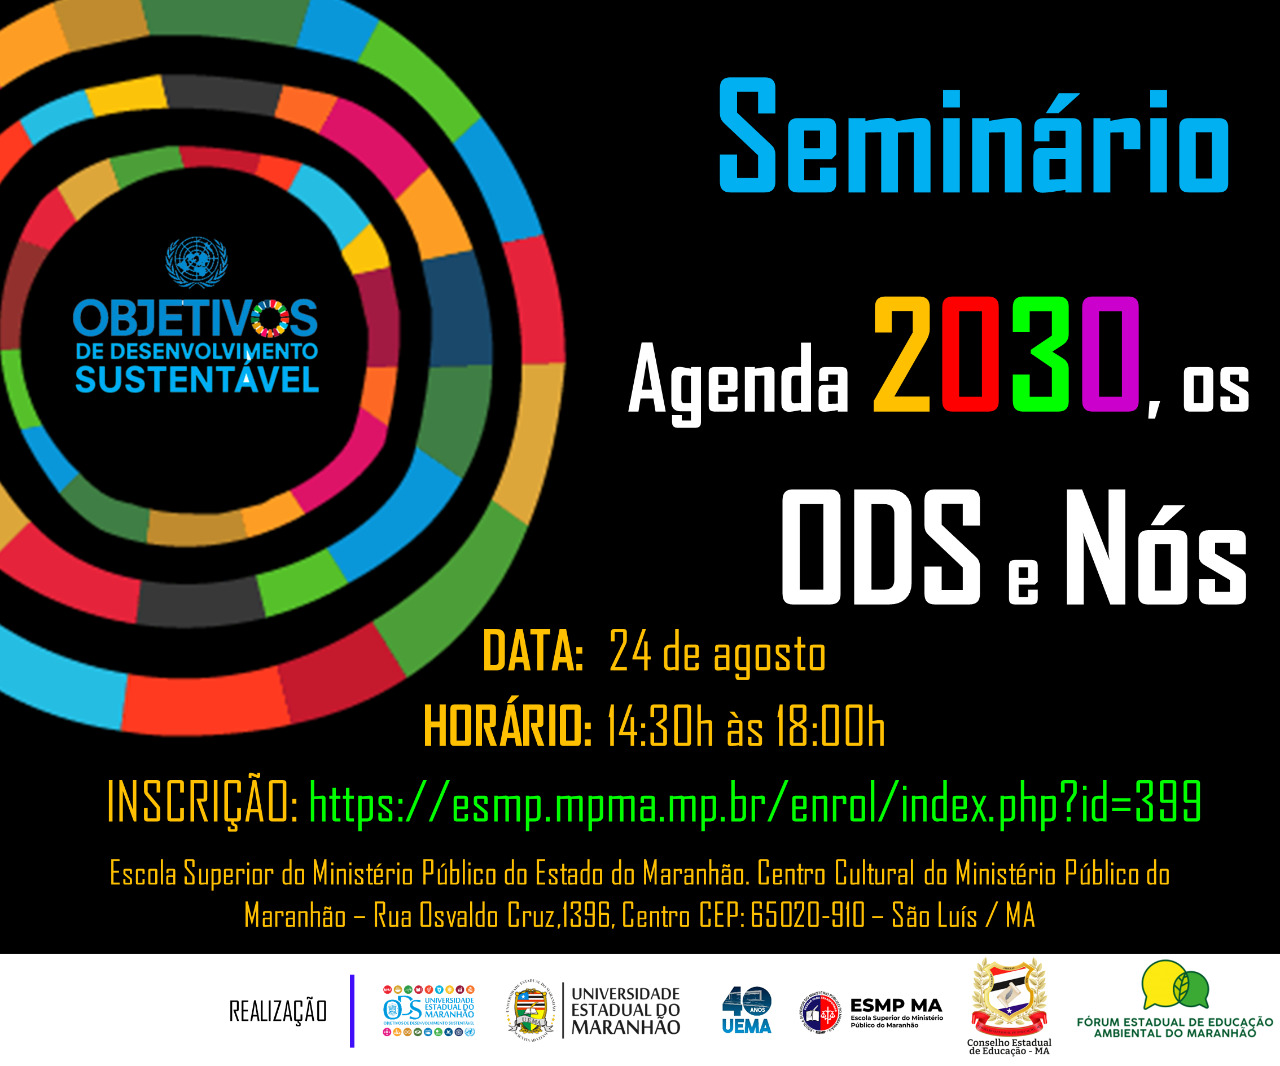 Seminário Agenda 2030, os ODS e Nós